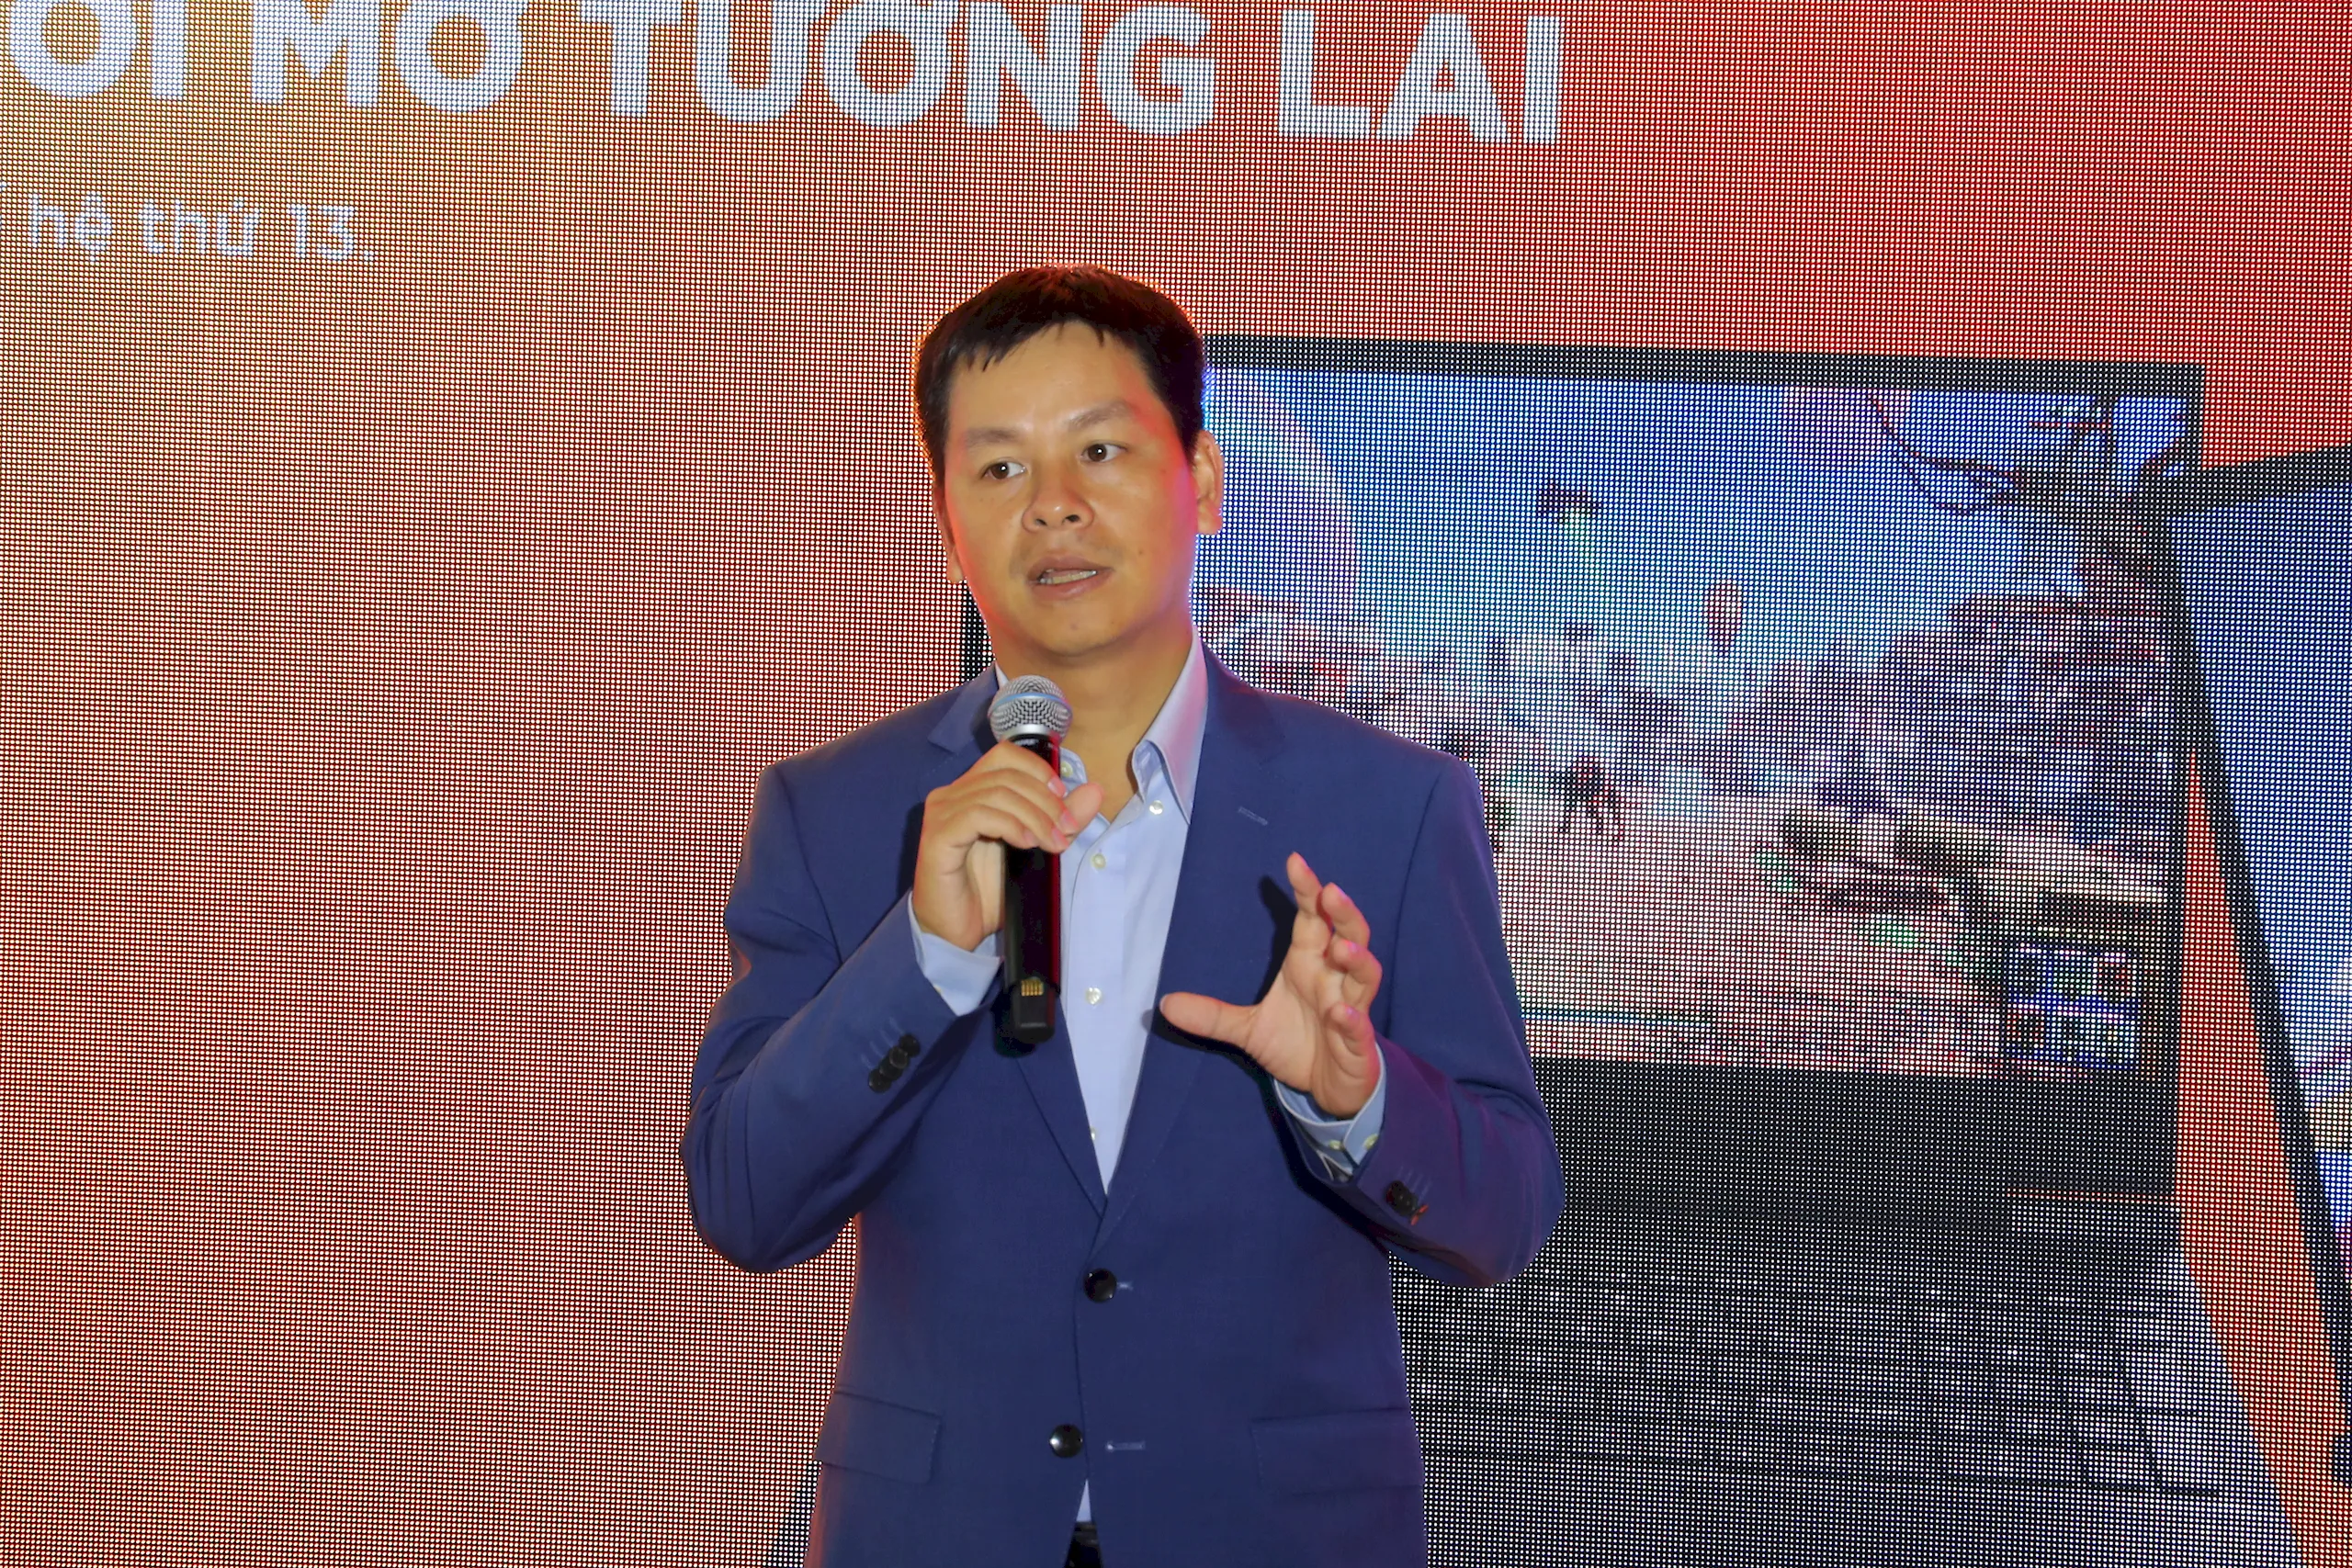 HP Việt Nam ra mắt loạt sản phẩm công nghệ thế hệ mới với chủ đề “Thế hệ mới – Khơi mở tương lai”